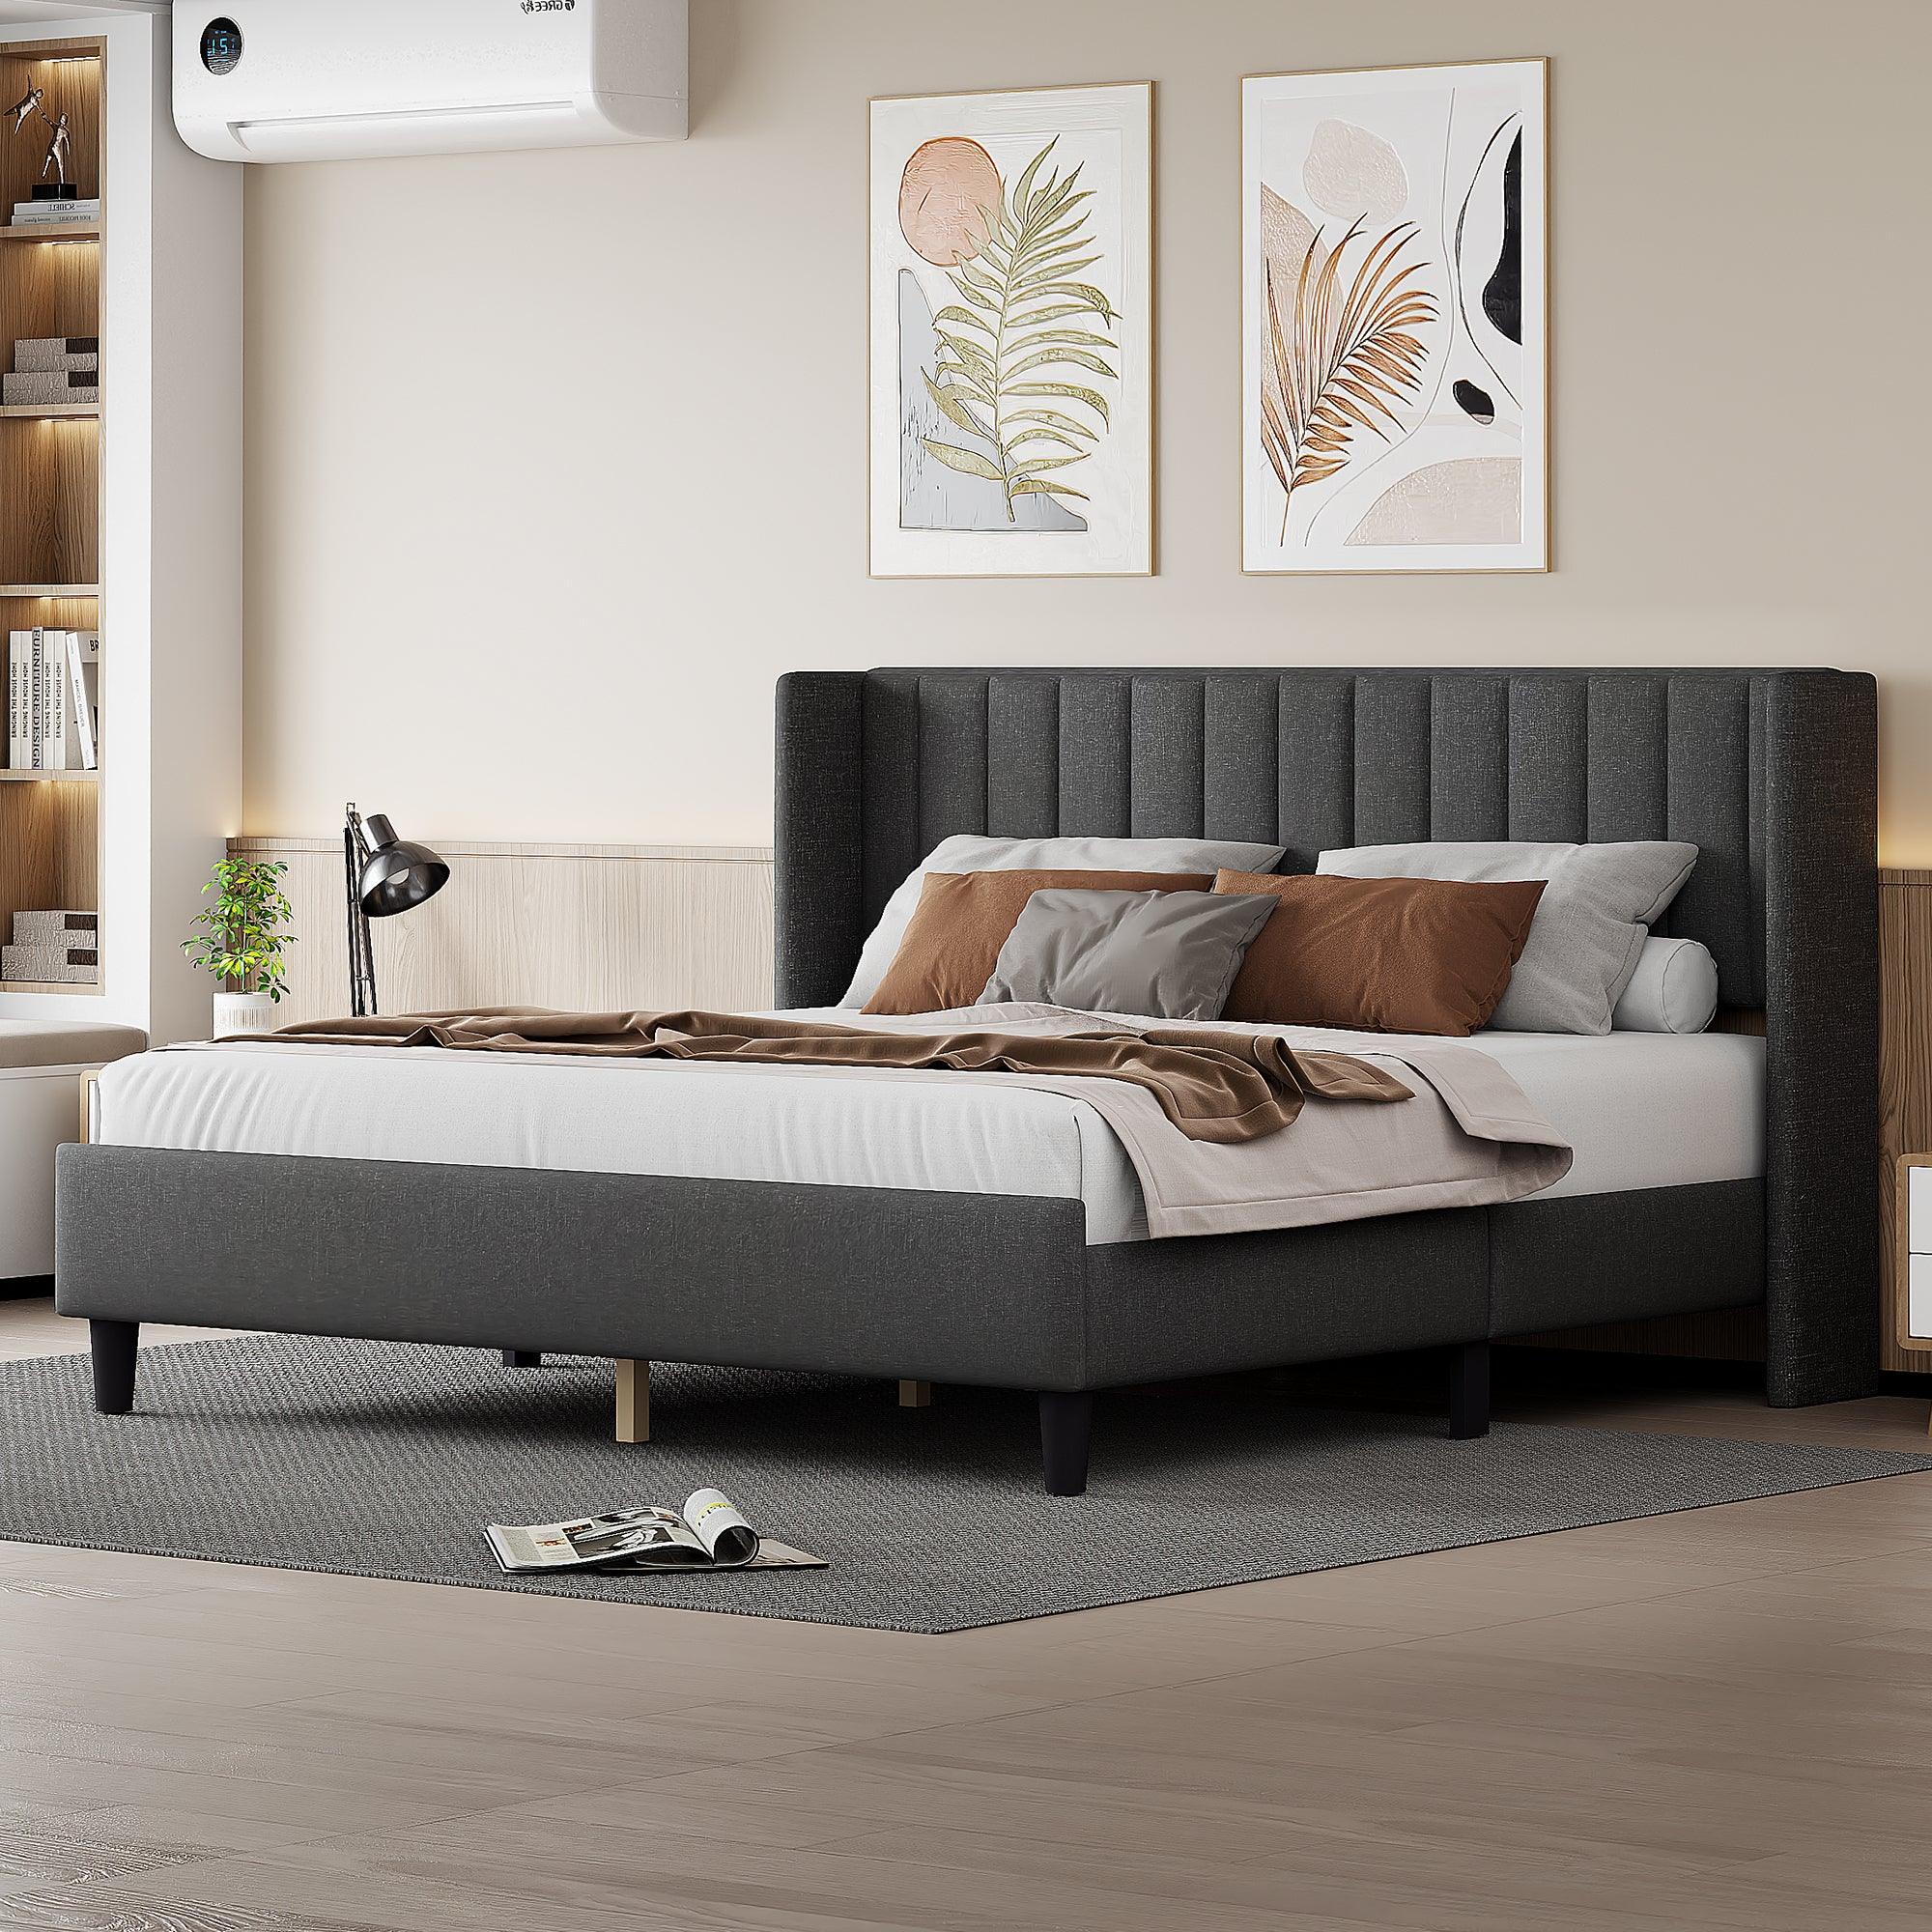 🆓🚛 King Size Upholstered Platform Bed Frame With Headboard, Mattress Foundation, Wood Slat Support, Black